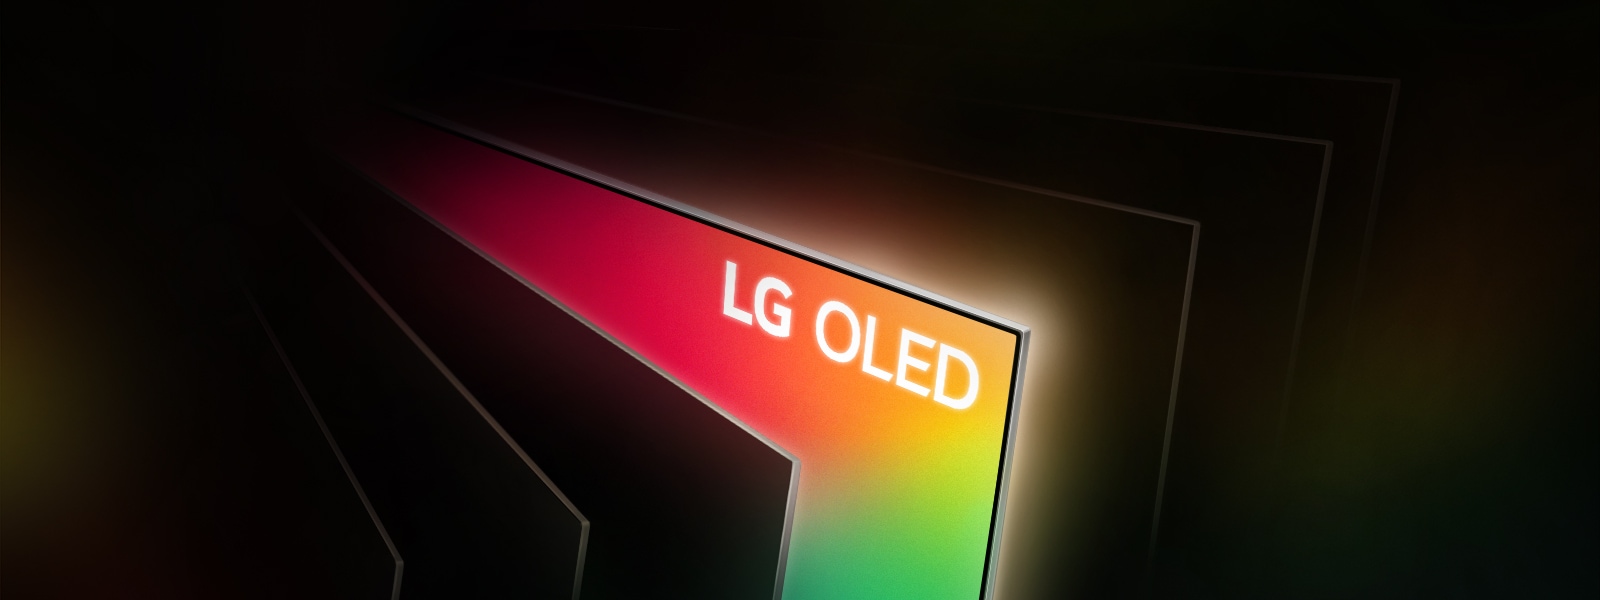 為什么LG OLED如此令人驚嘆?1